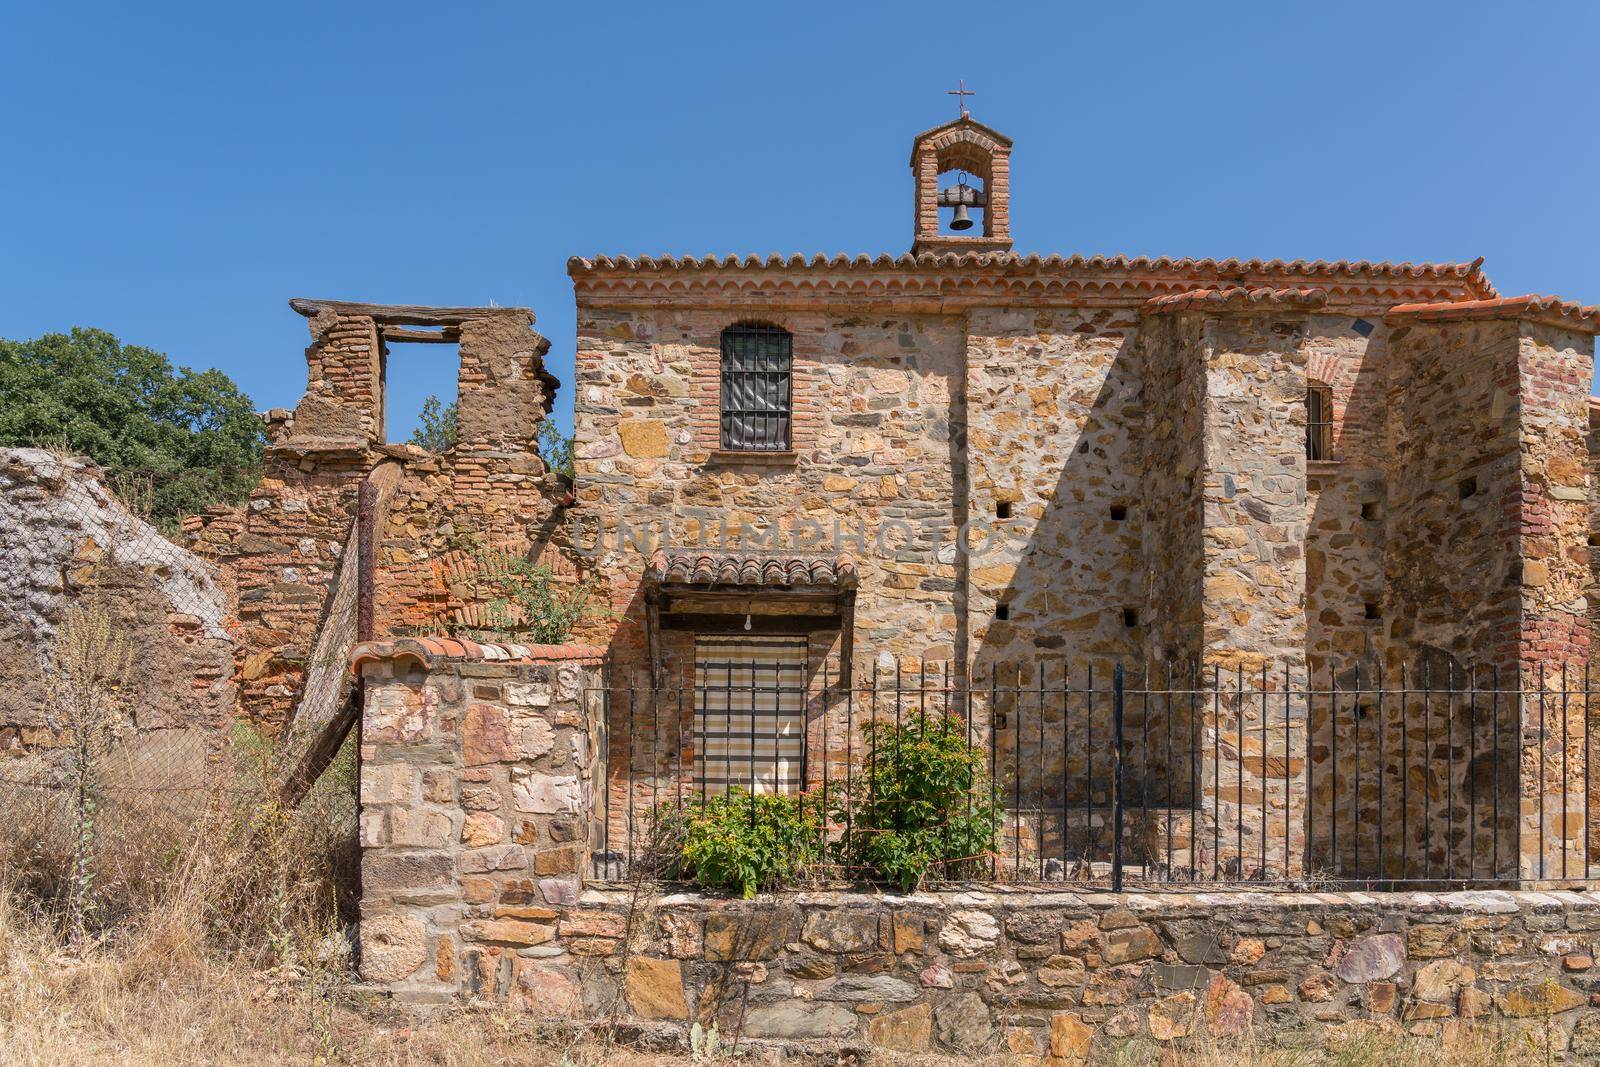 Bishop's Hospital. Navatrasierra, Las Villuercas, los Ibores and La Jara geopark, Caceres province, Extremadura, Spain by EduardoMT